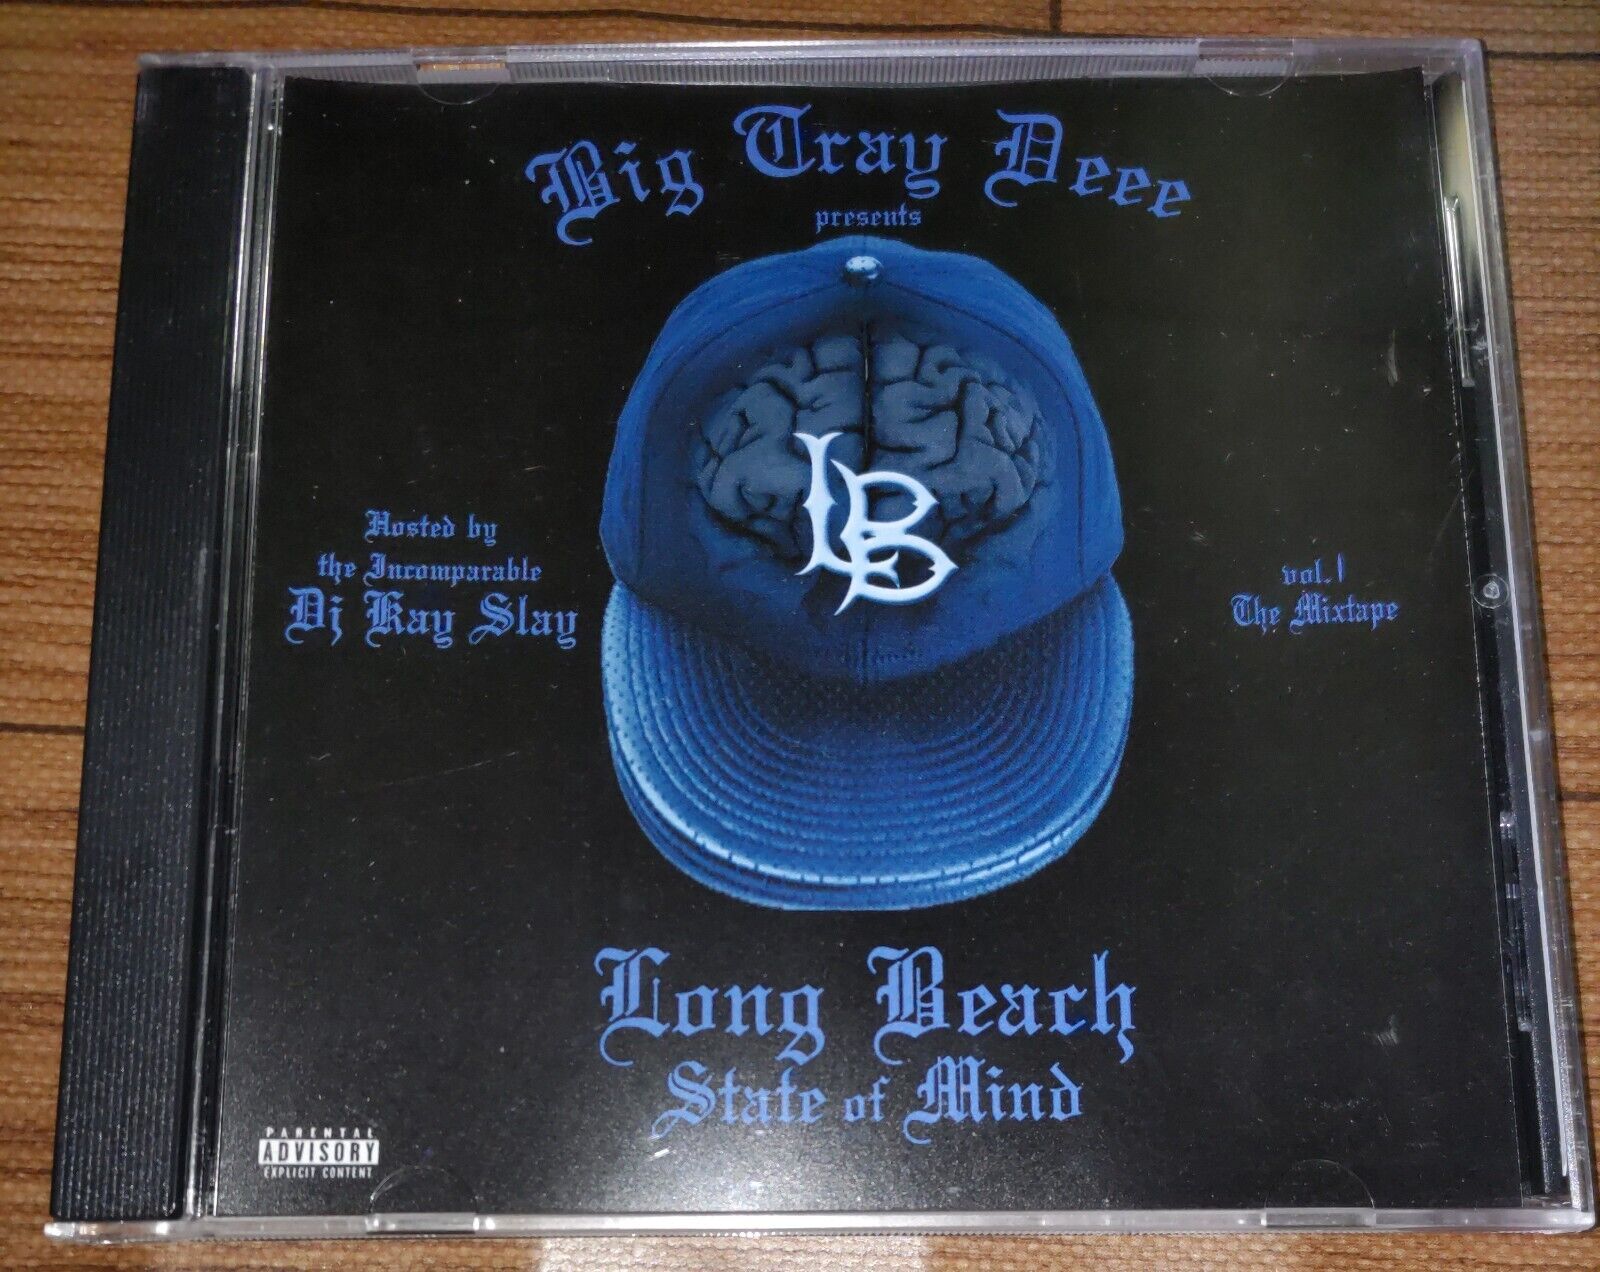 BIG TRAY DEE - long beach state of mind OOP rare gangsta cd album rap